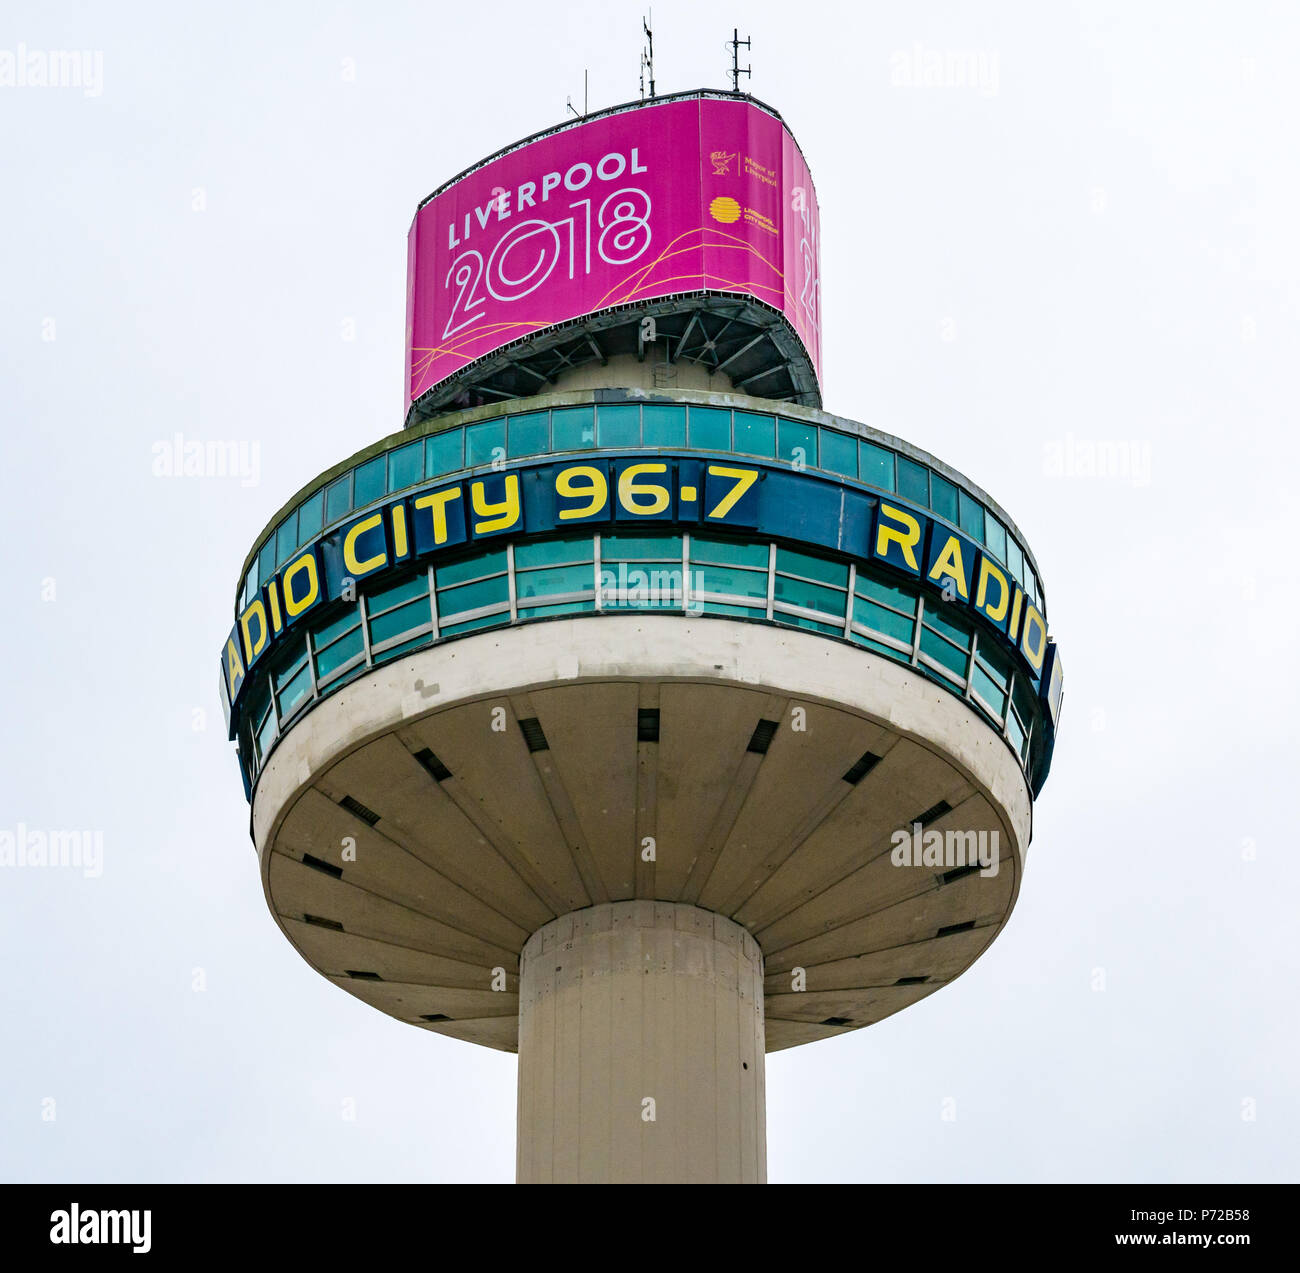 1960 Radio béton City Tower, Tour d'observation Beacon St Johns, avec Liverpool 2018 bannière, Liverpool, Angleterre, Royaume-Uni Banque D'Images